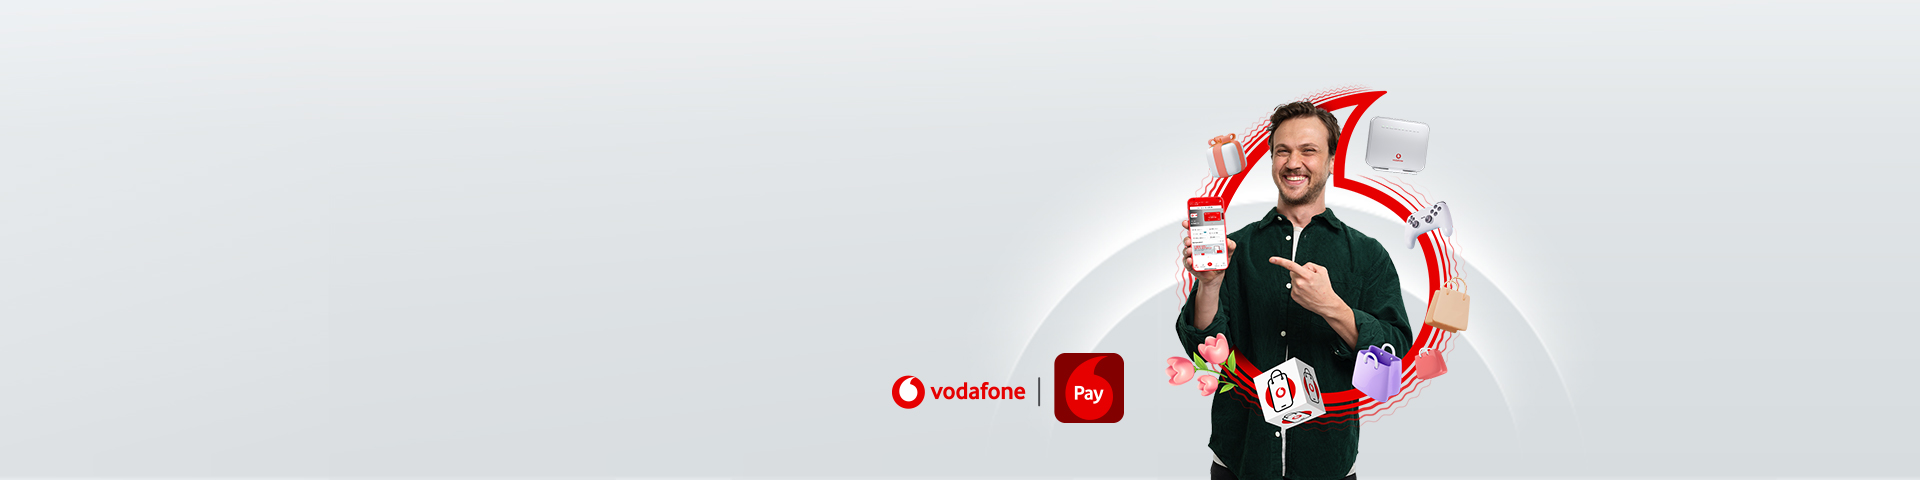 Vodafone Pay’den QR’a Hoş Geldin Kampanyası!